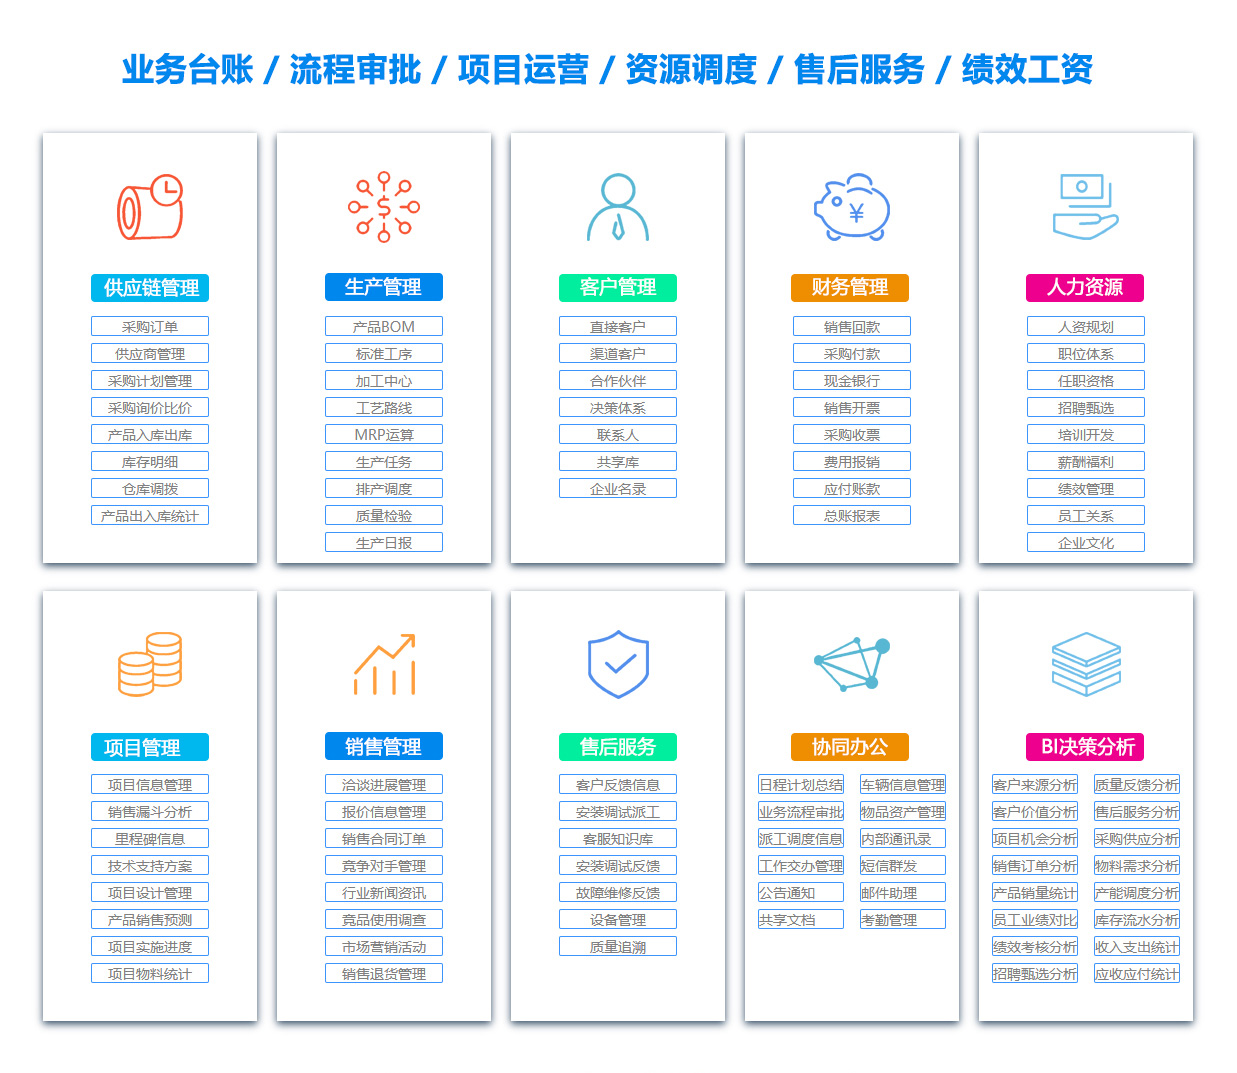 惠州SCM:供应链管理系统